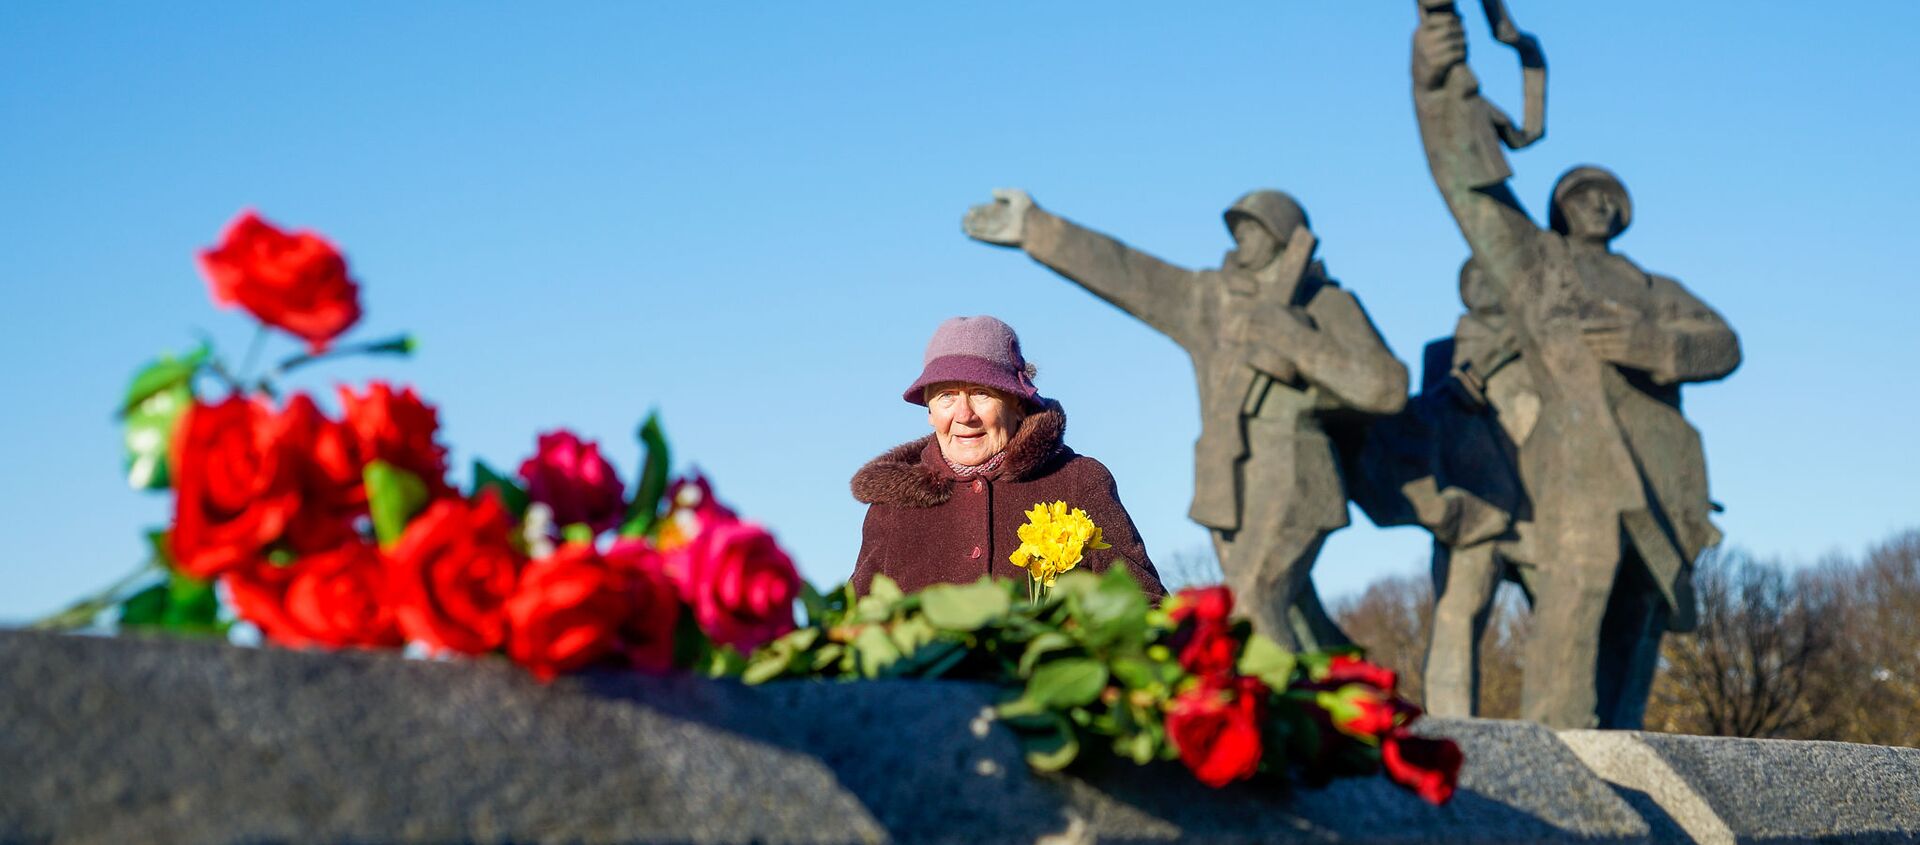 Церемония возложения венков и цветов к памятнику Освободителям Риги в Пардаугаве, 22 февраля 2019 года - Sputnik Латвия, 1920, 23.02.2019